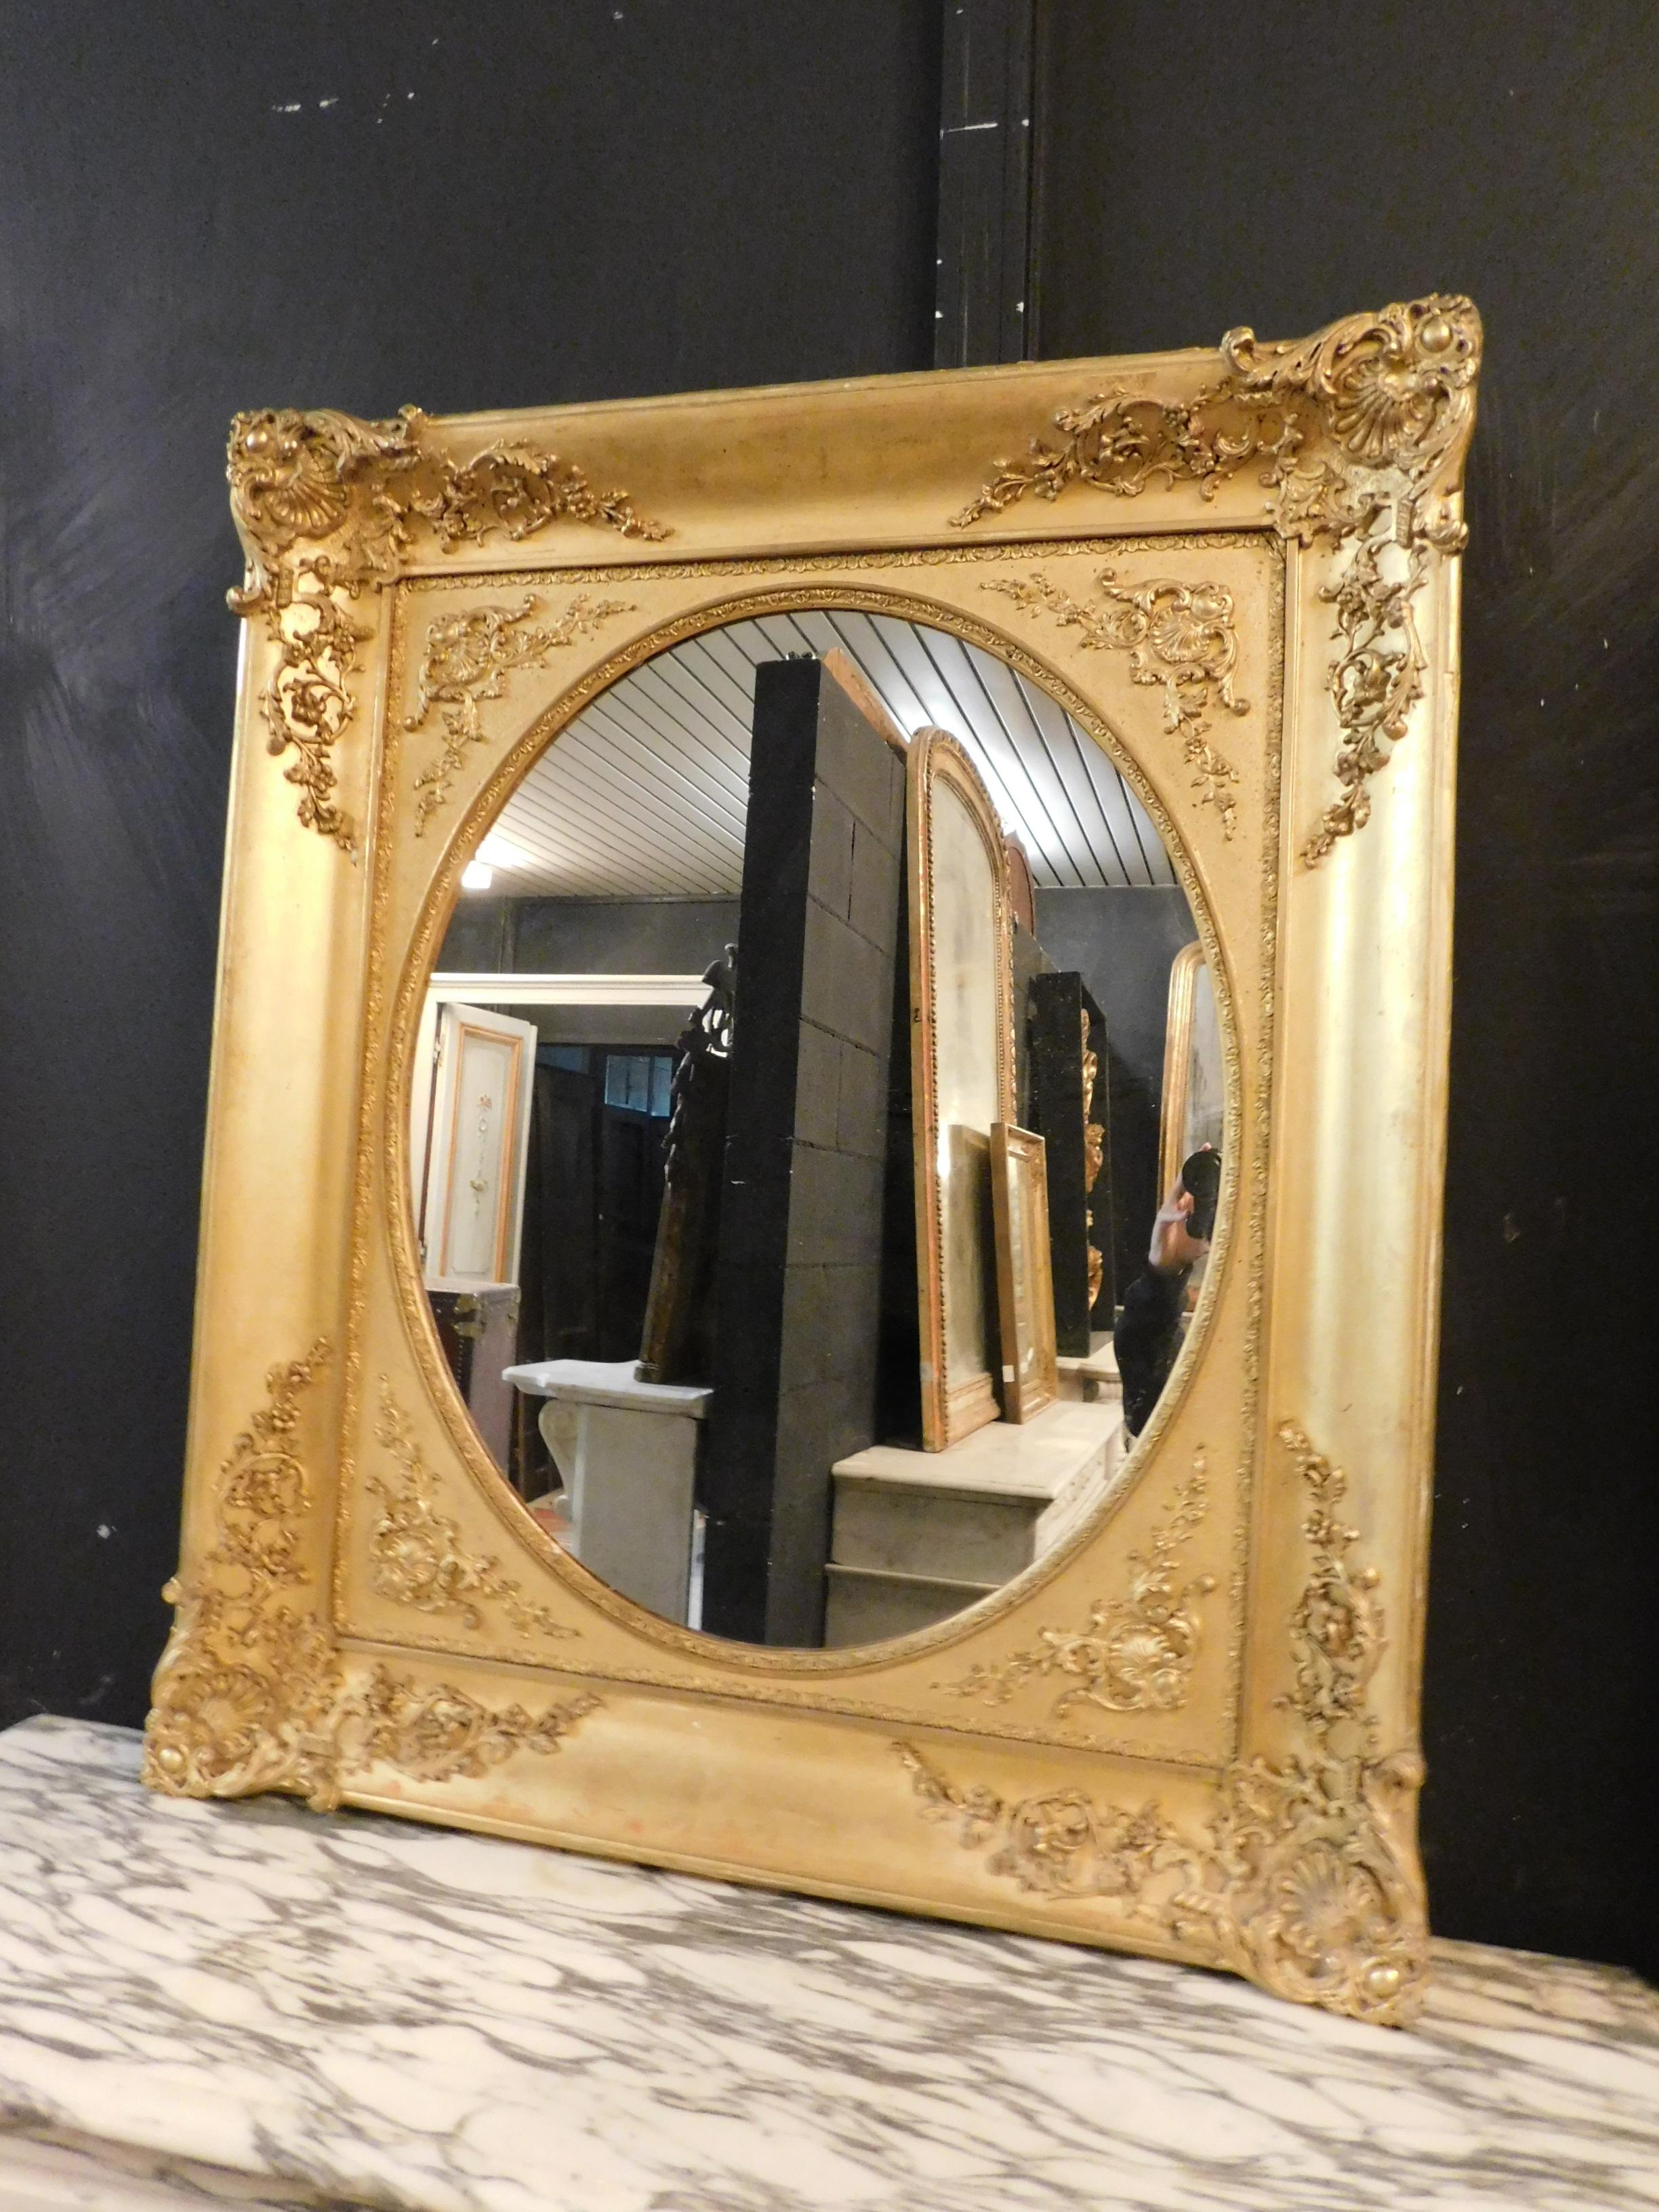 Miroir antique doré, richement sculpté à la main avec de beaux détails dans le cadre, de forme rectangulaire mais avec miroir ovale, du 19ème siècle, du Piémont (Italie), idéal pour être installé dans de nombreux environnements tels que les entrées,